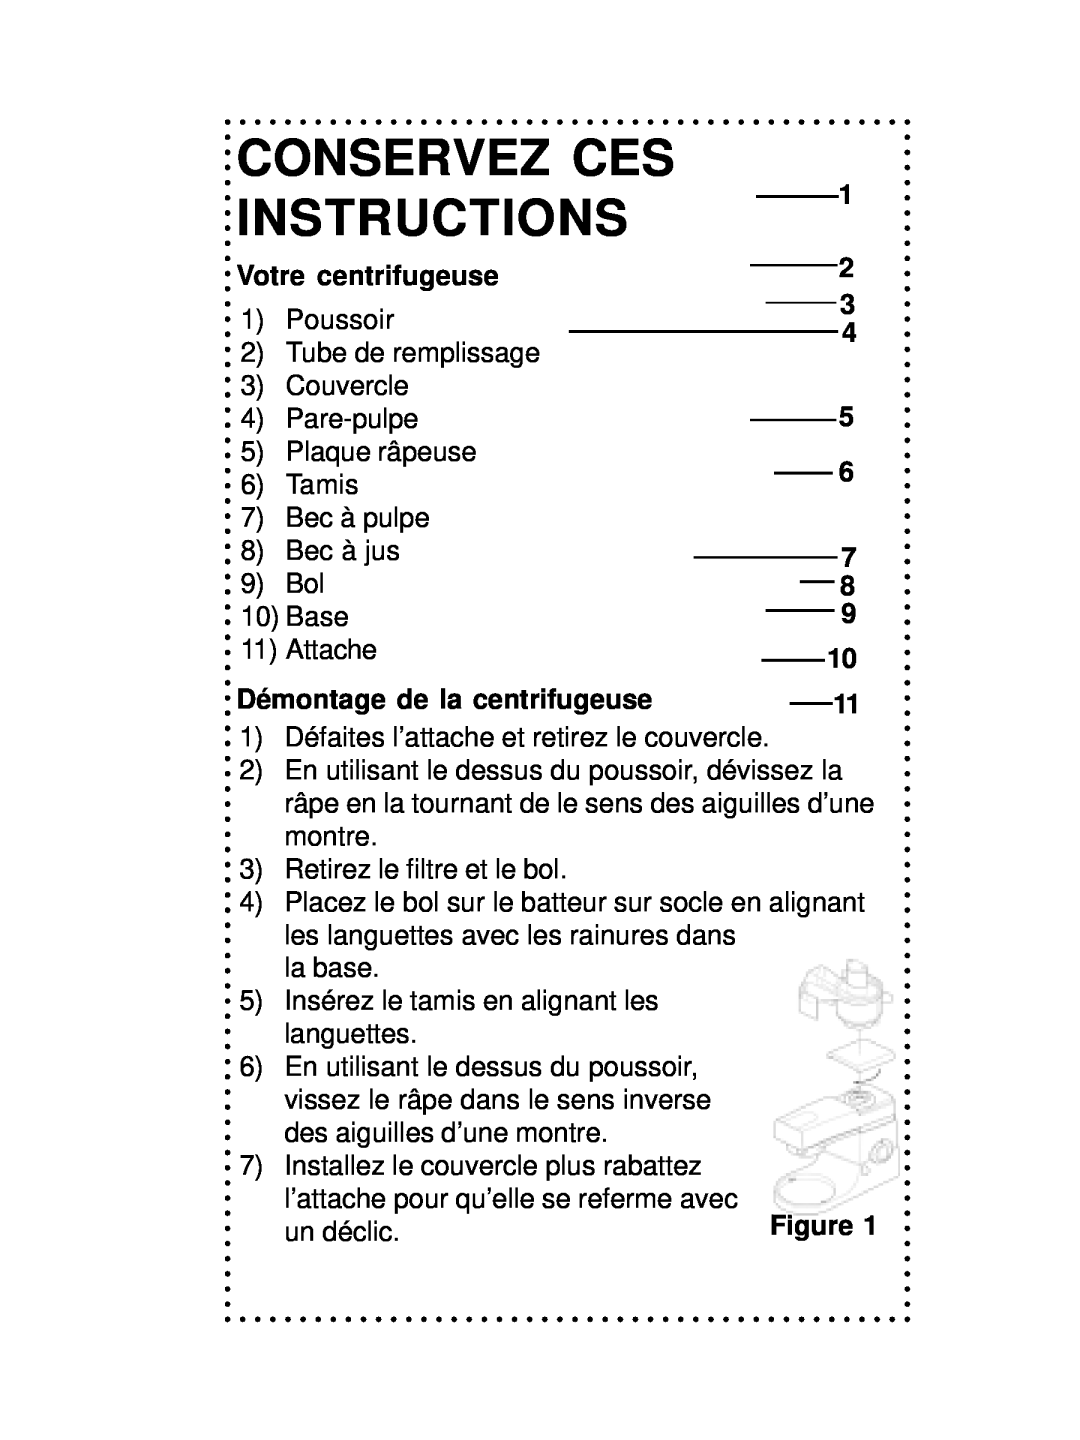 DeLonghi DSM700, DSM800 instruction manual Conservez Ces, Votre centrifugeuse, Démontage de la centrifugeuse, Instructions 